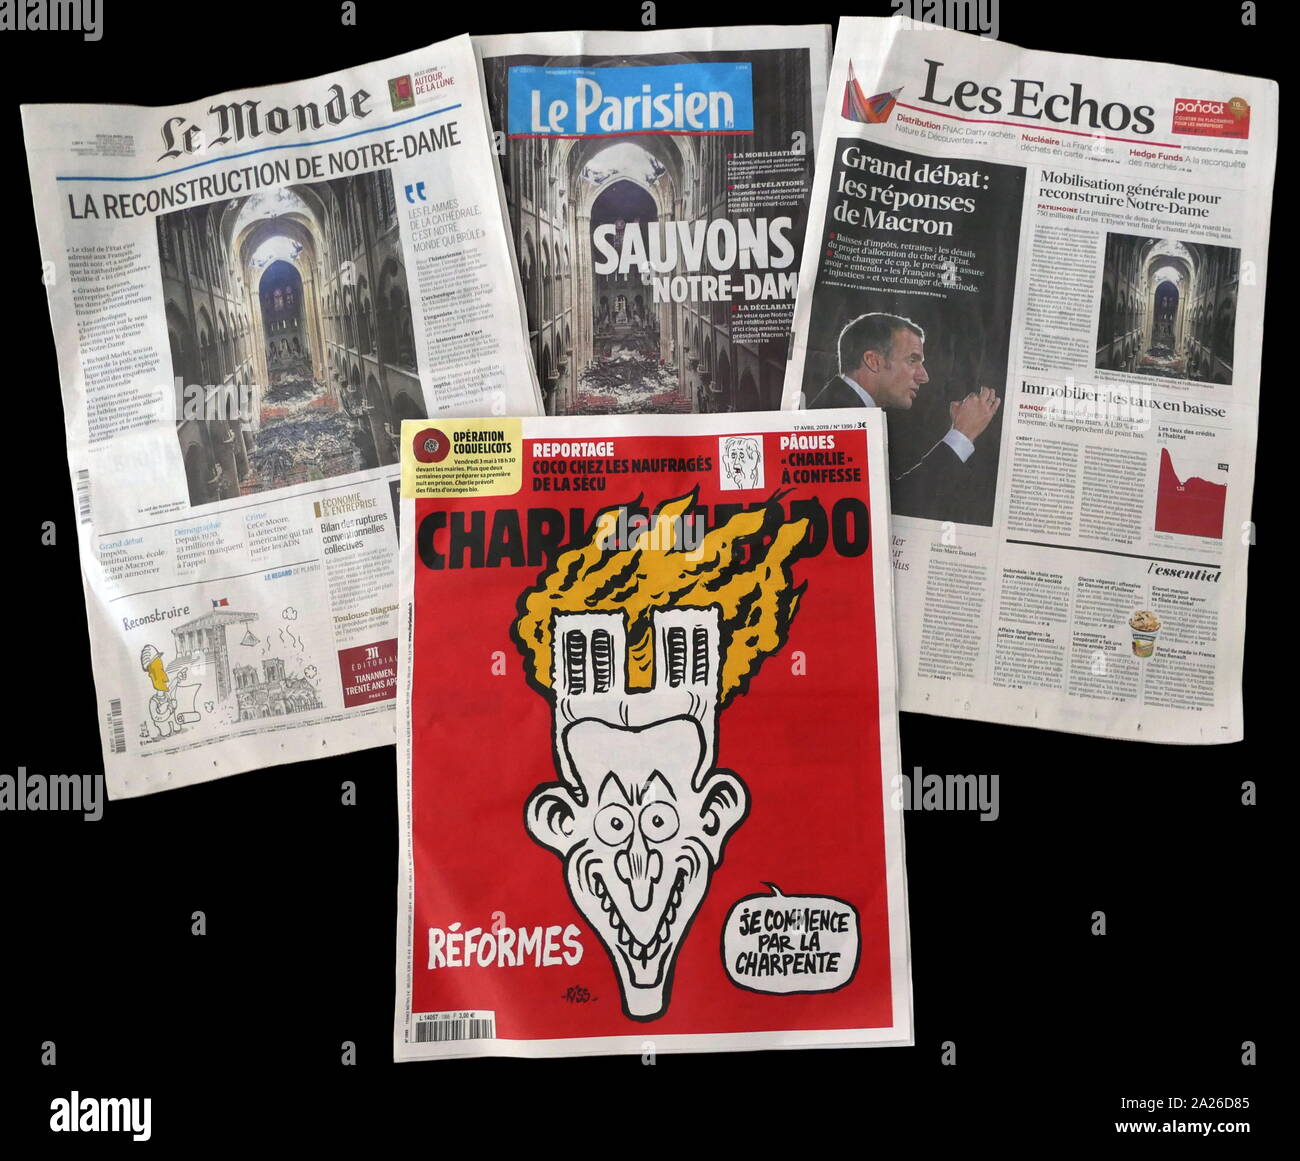 Vergleichsmessung französische Zeitung Vorderseiten, zeigt die Auswirkungen des Brandes, der Notre Dame Kathedrale beschädigt Stockfoto